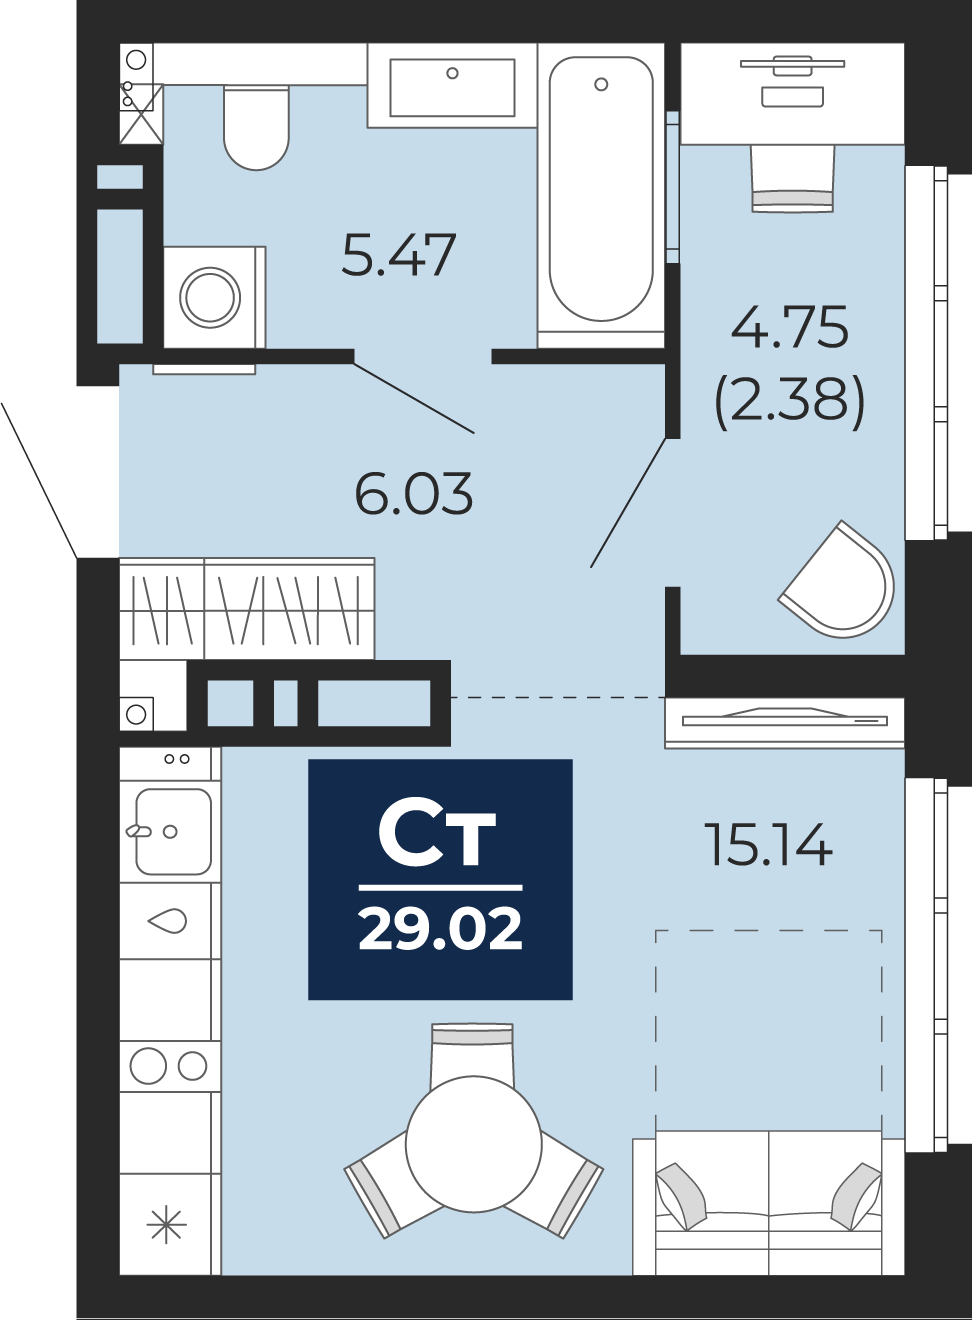 Квартира № 403, Студия, 29.02 кв. м, 16 этаж